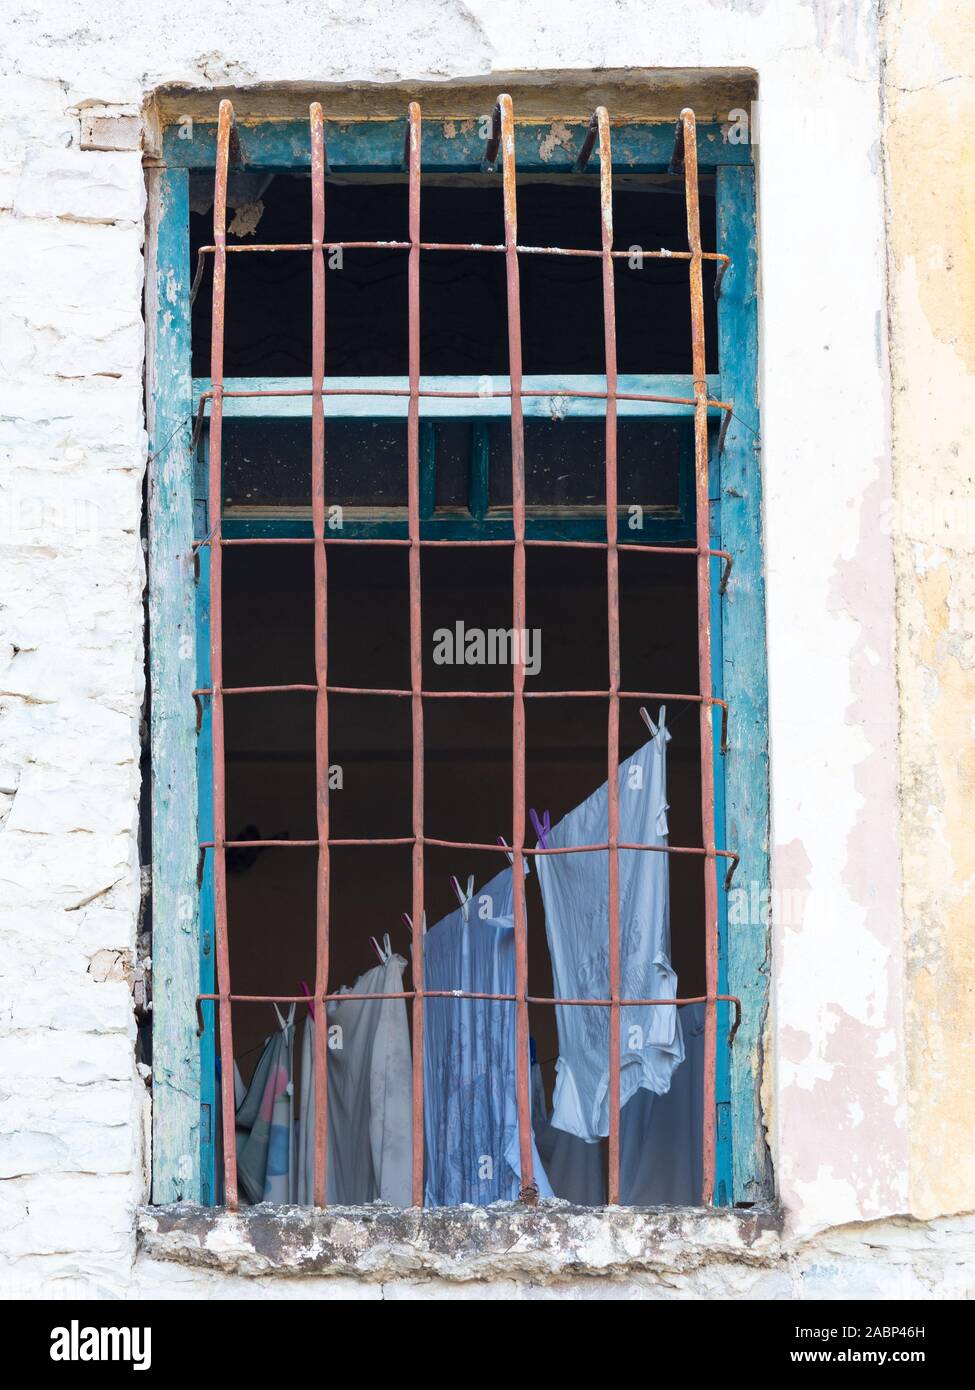 Argirocastro, Albania - biancheria lavata appeso su uno stendibiancheria fotografato attraverso una finestra con barre di metallo e scheggiati turchese del rivestimento del vetro. Foto Stock